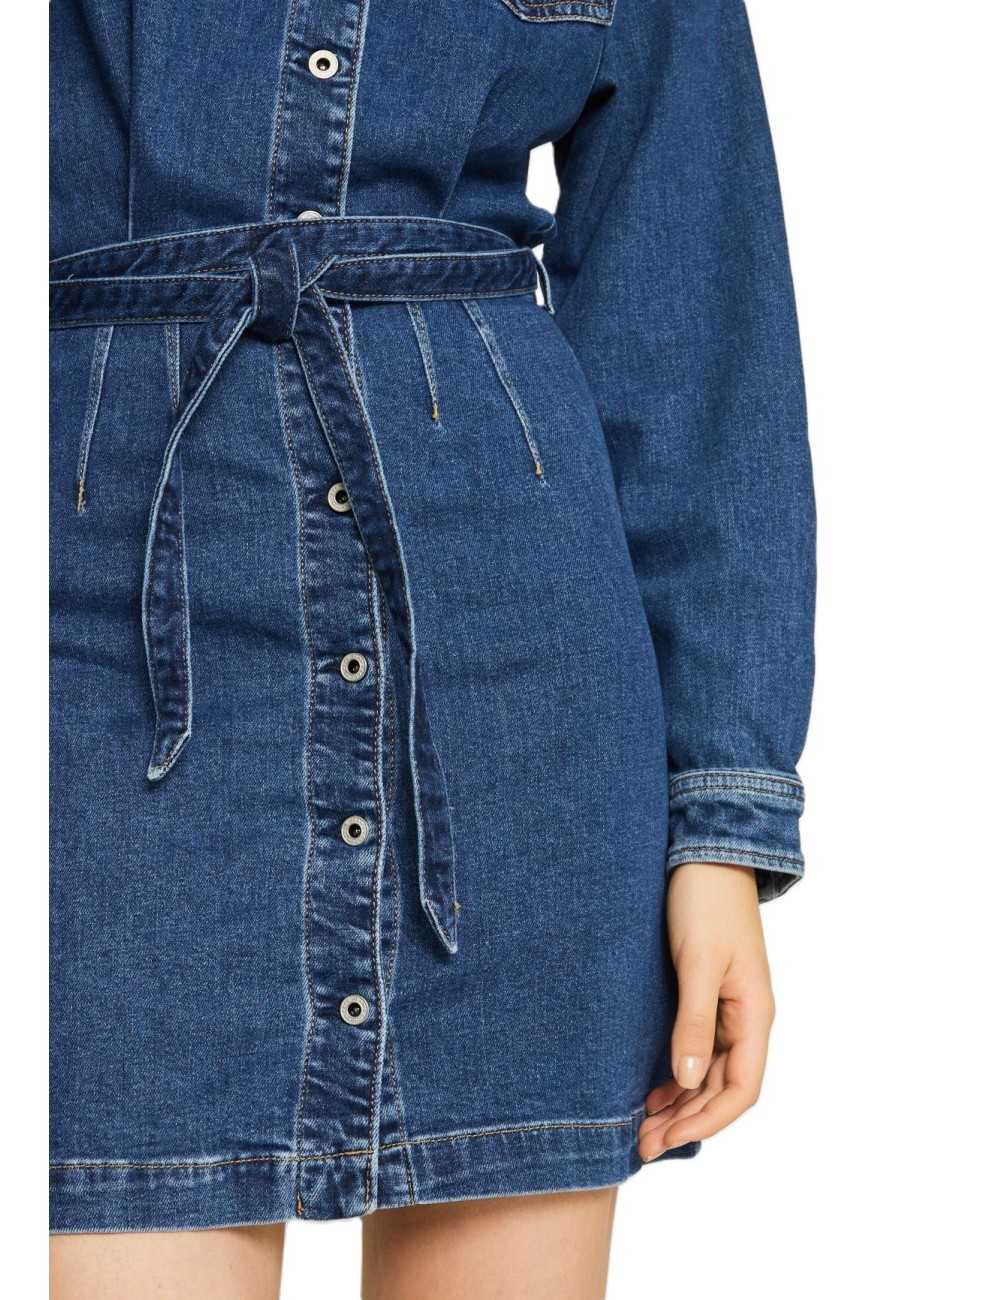 Pepe Jeans abito corto Selena in jeans denim - Abiti Donna